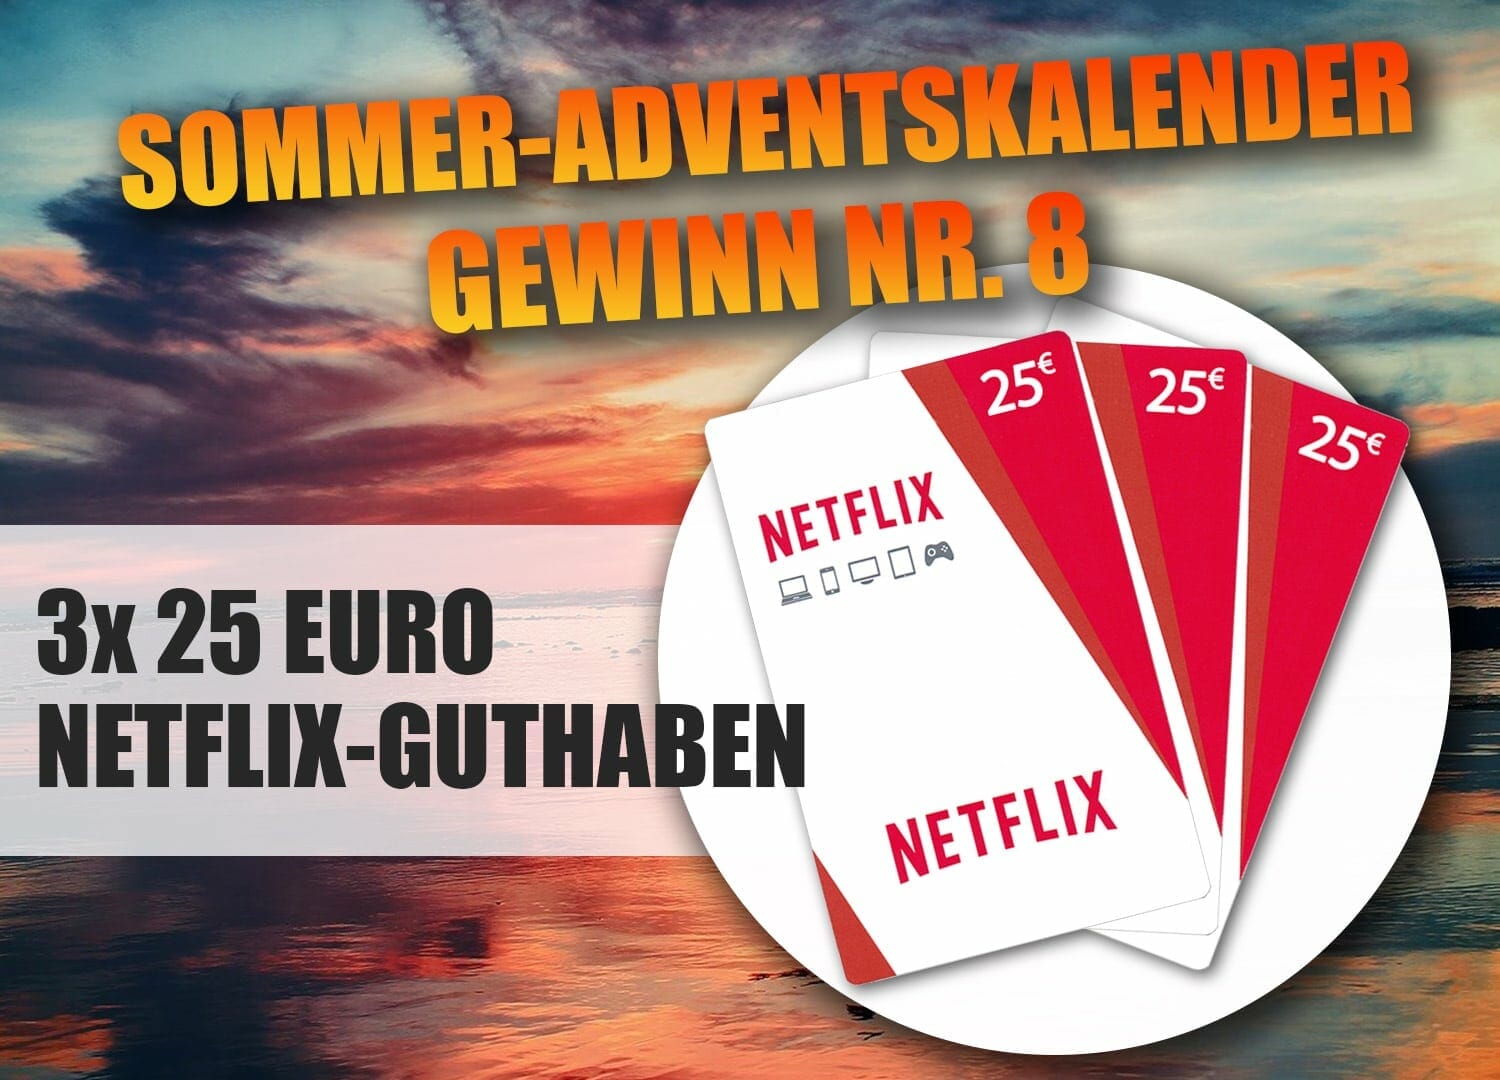 Gewinnspiel-Türchen Nr. NETFLIX 8 GUTHABEN - 25 EURO 3x